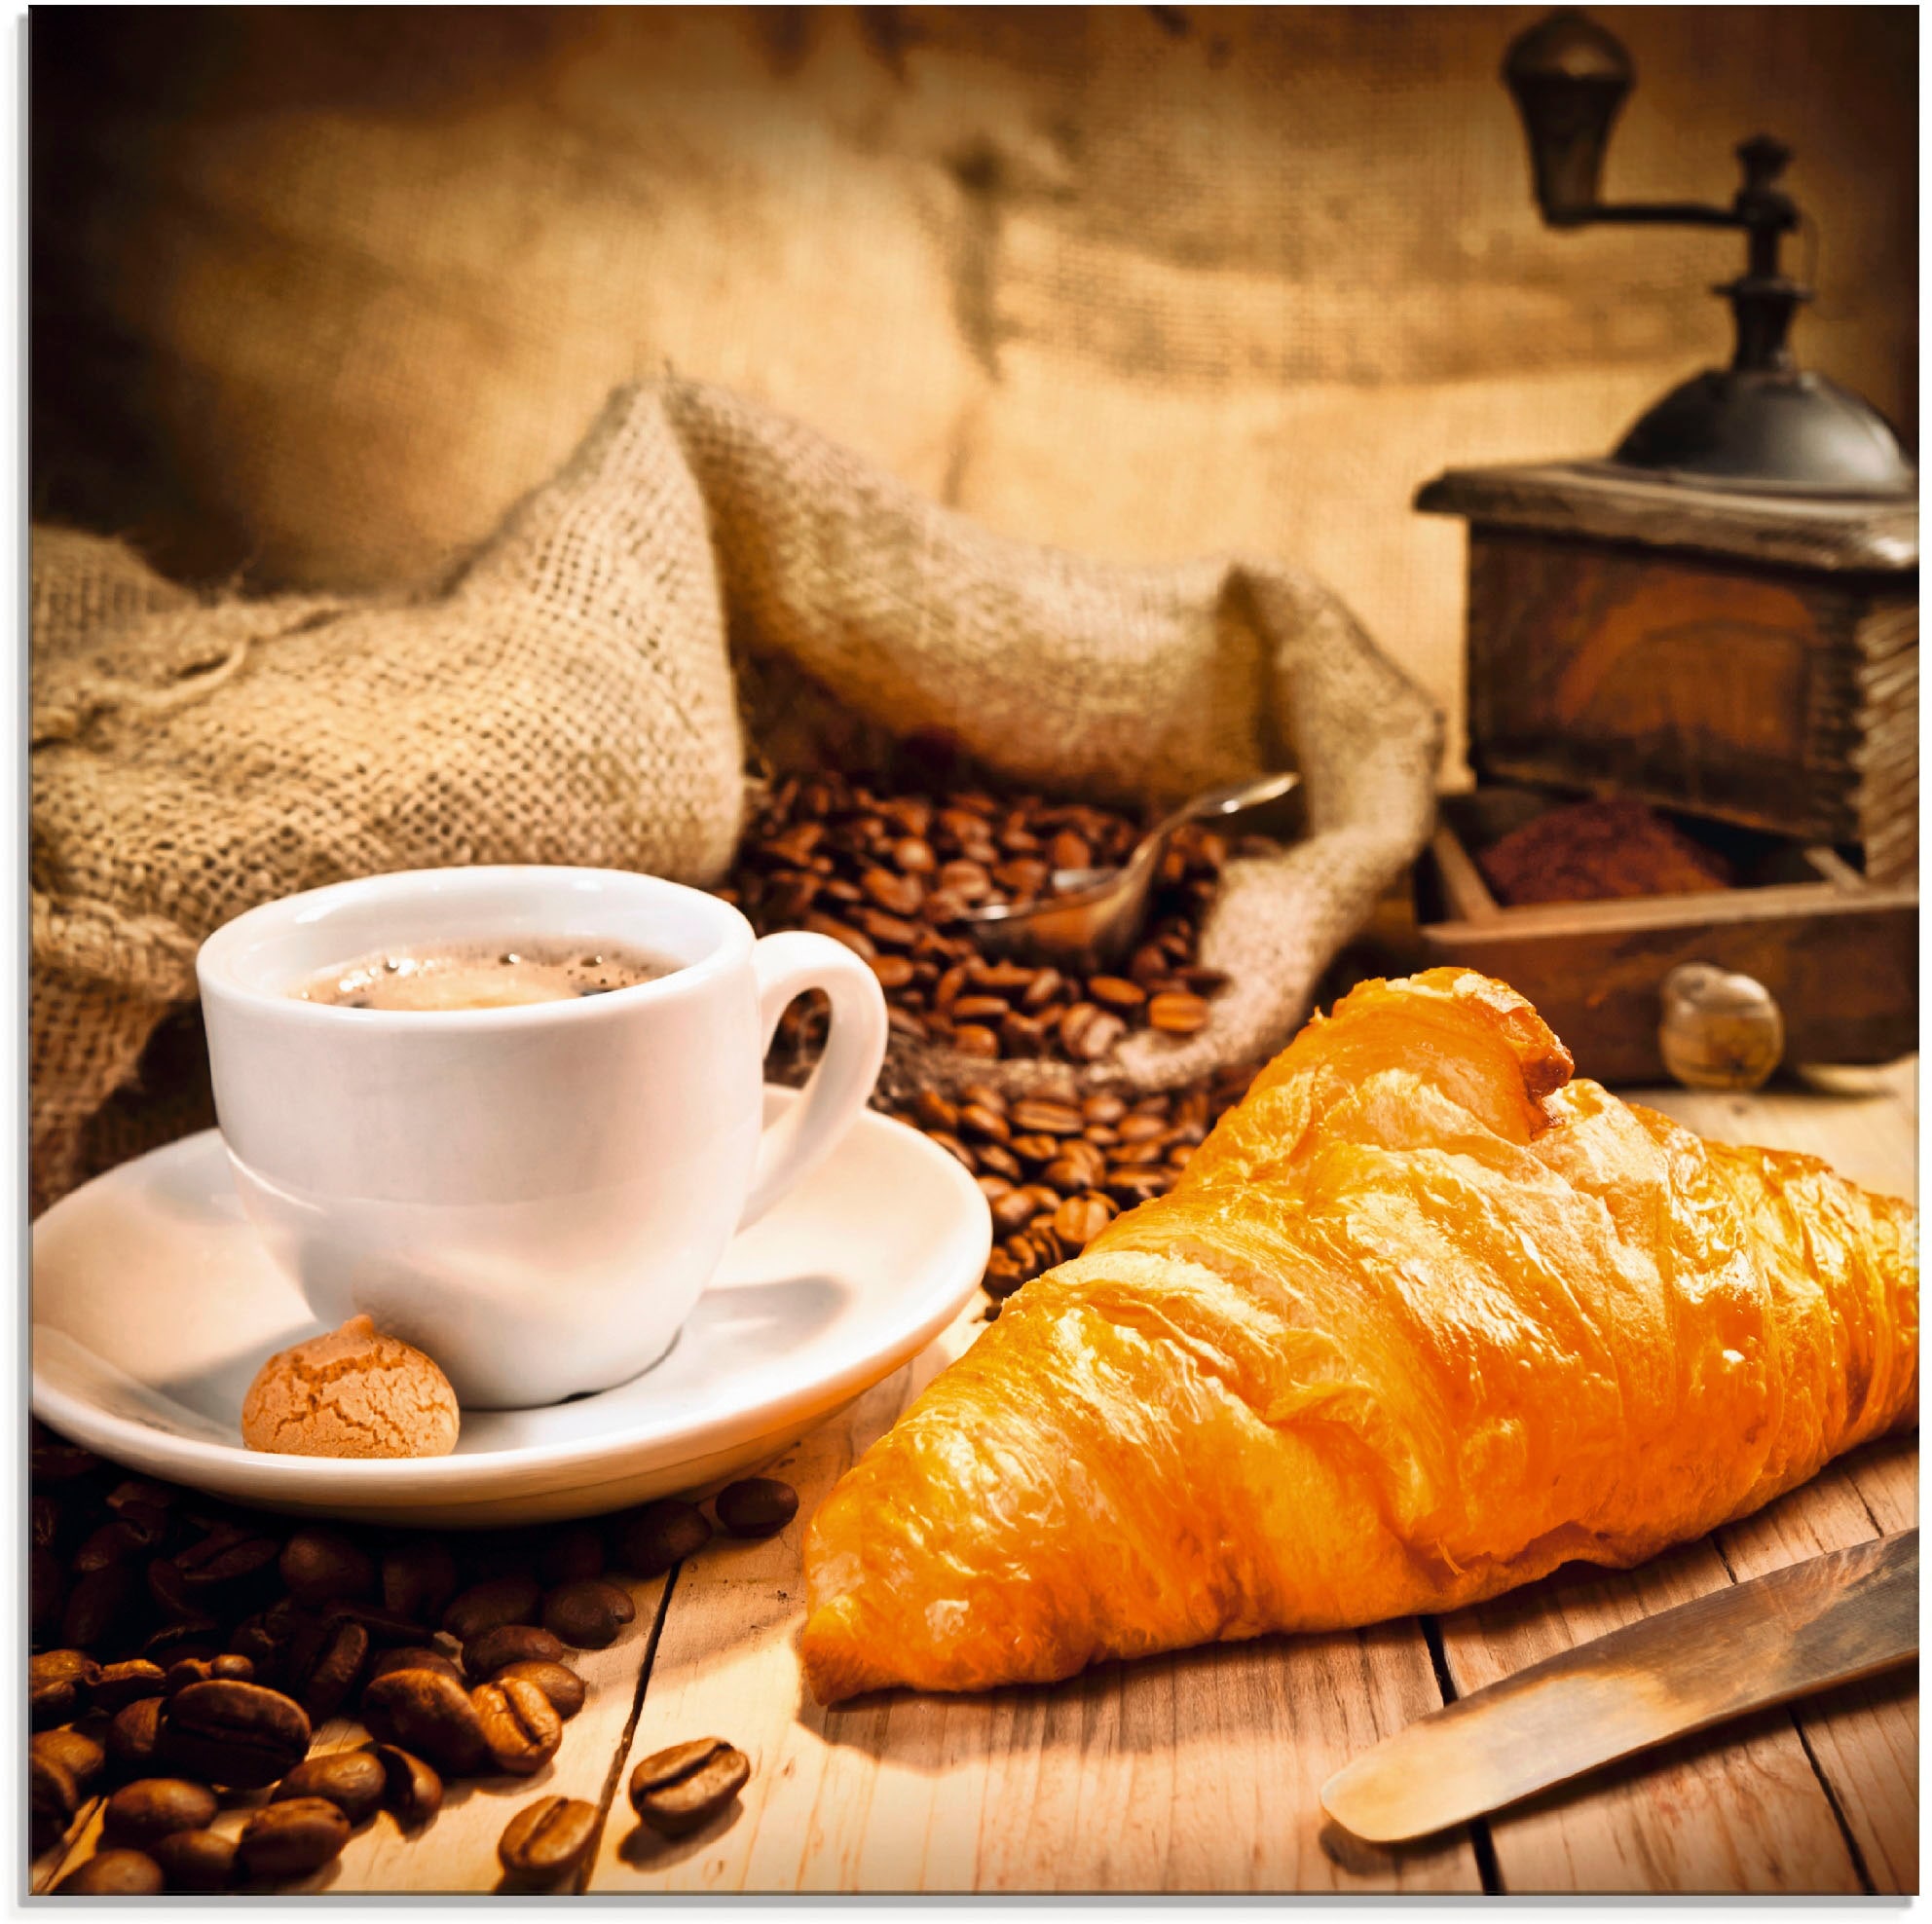 Artland Glasbild »Kaffeetasse mit Croissant«, Getränke, (1 St.), in verschiedenen Größen